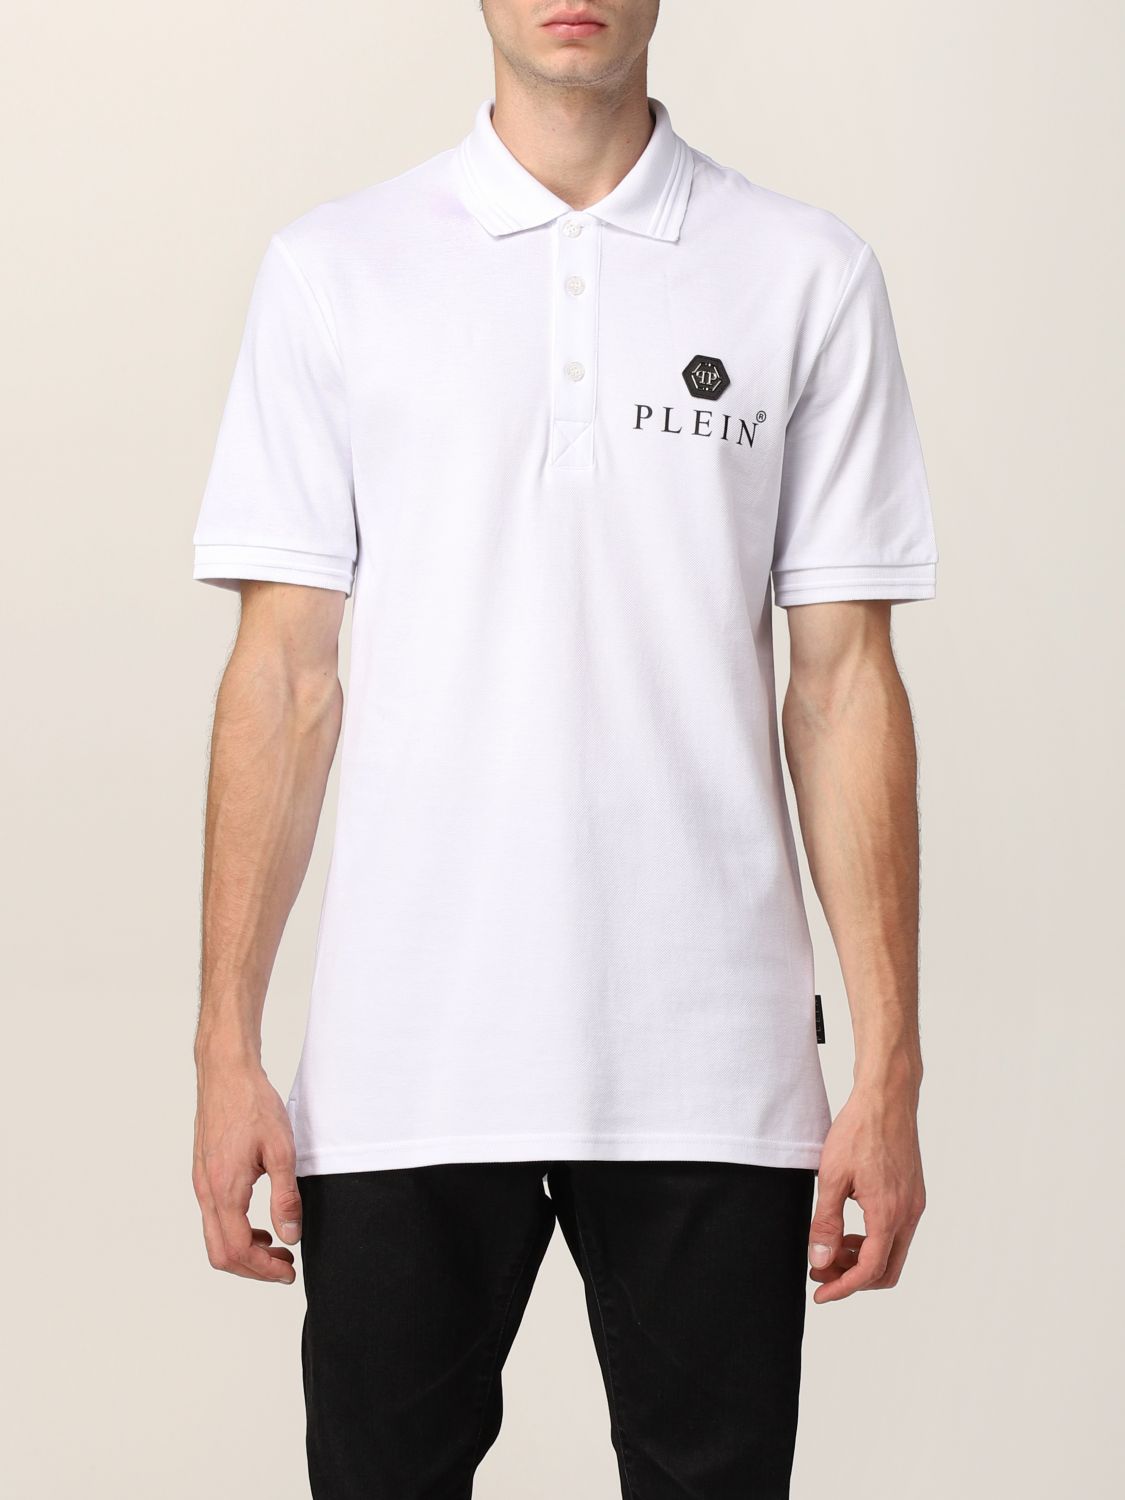 PHILIPP PLEIN: Iconic cotton polo shirt - White | Philipp Plein polo ...